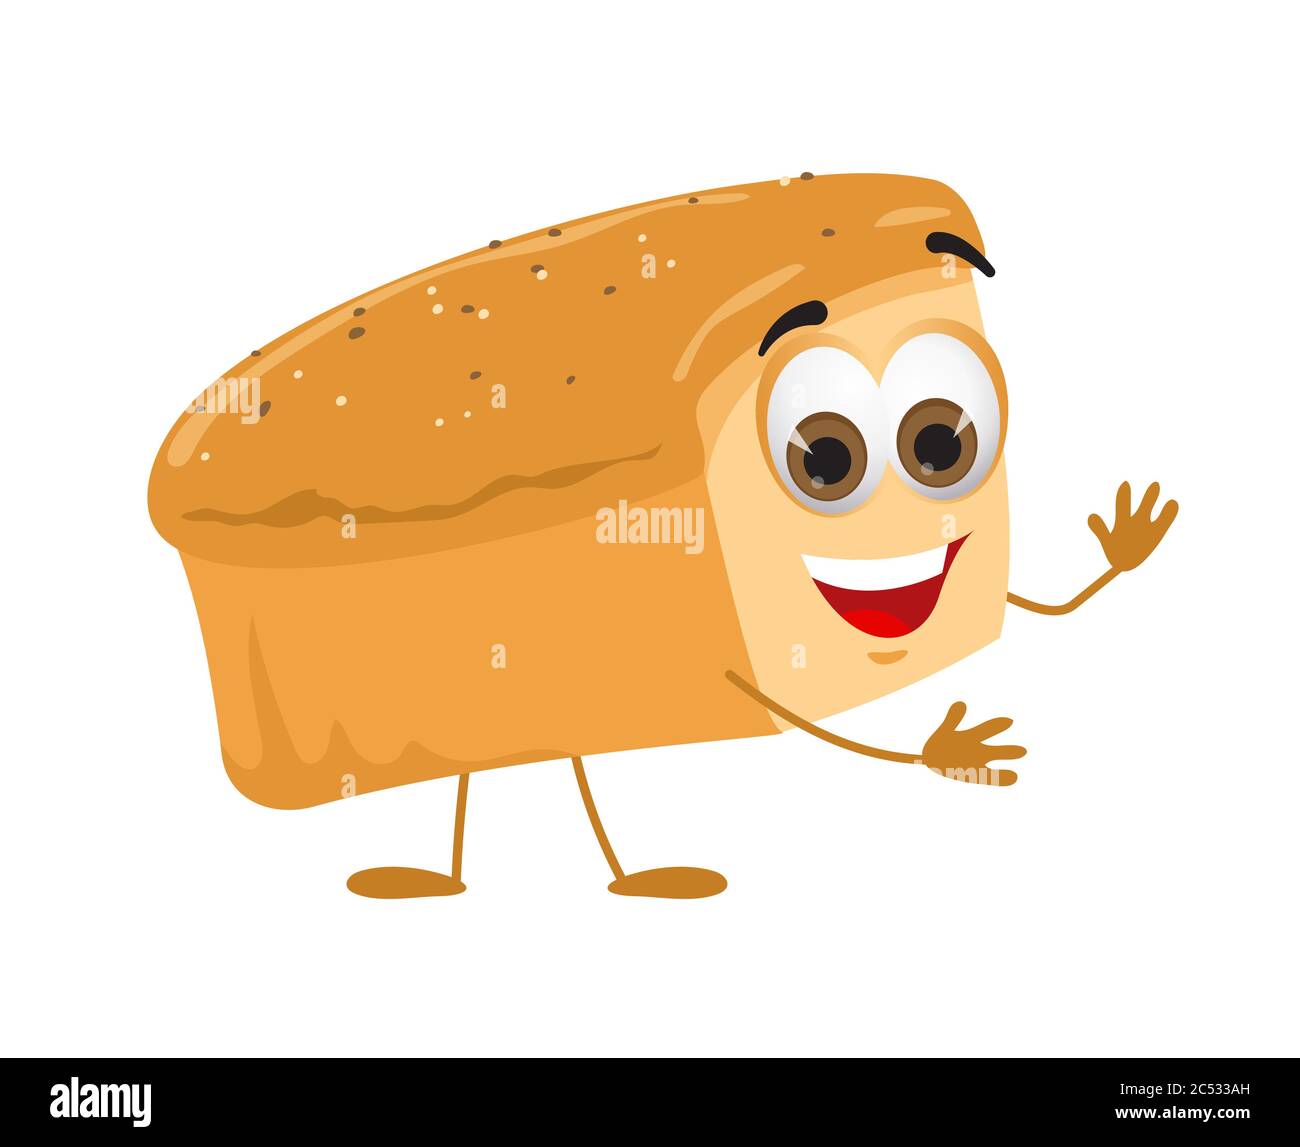 Lustiges Brot mit Augen auf weißem Hintergrund, lustige Produktserie, flache Vektorgrafik Stock Vektor